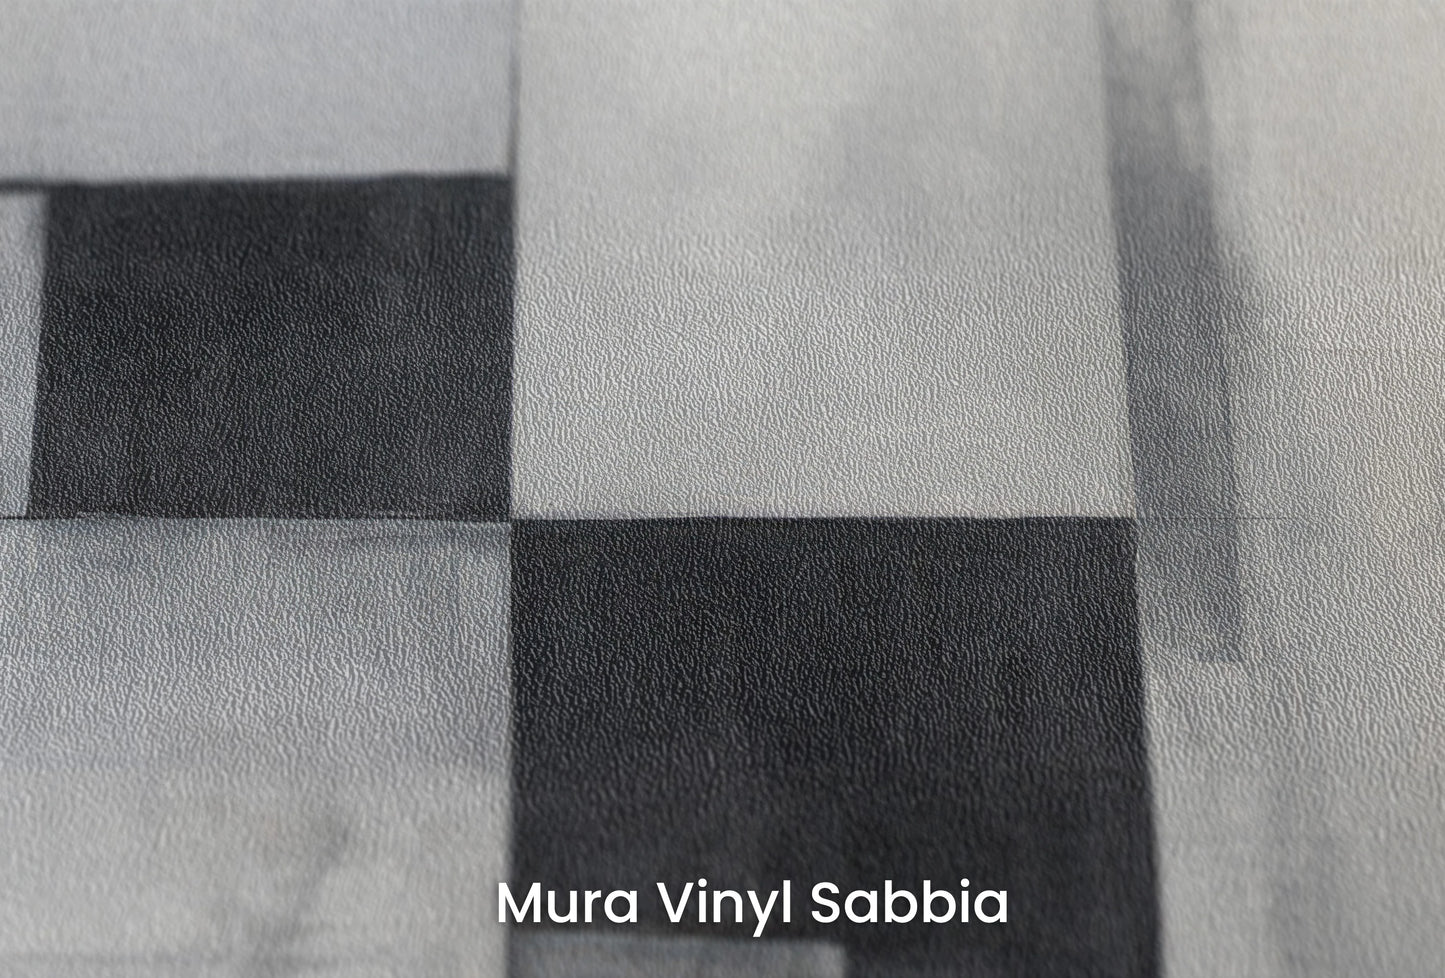 Zbliżenie na artystyczną fototapetę o nazwie Silent Complexity na podłożu Mura Vinyl Sabbia struktura grubego ziarna piasku.